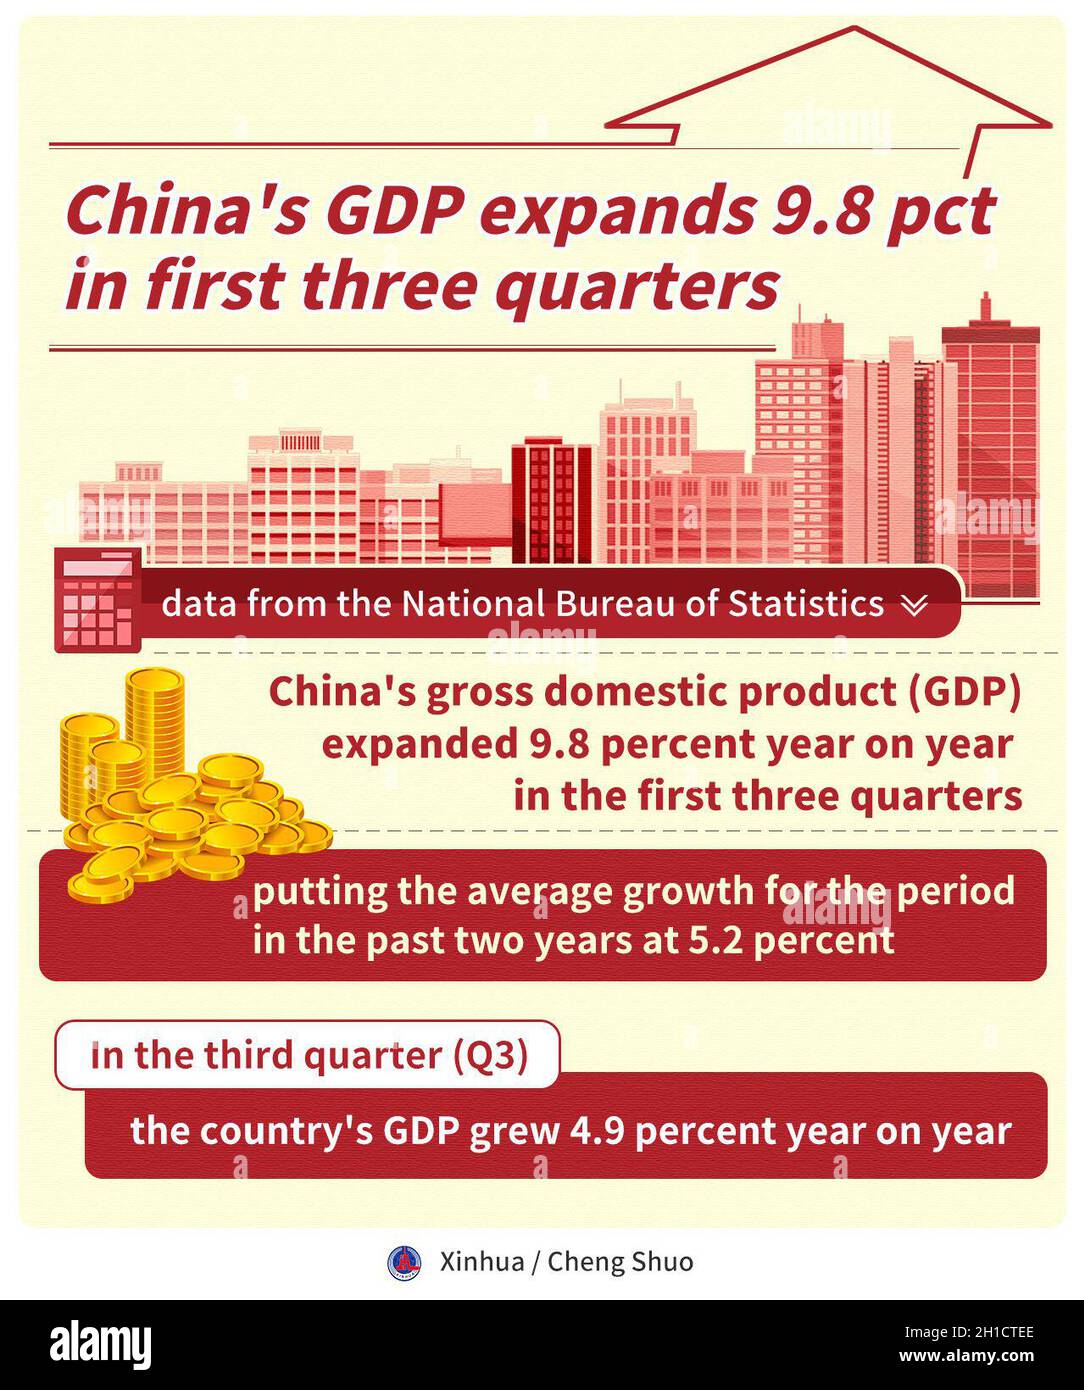 Pékin, Chine.18 octobre 2021.Le produit intérieur brut (PIB) de la Chine a augmenté de 9.8 pour cent par rapport à l'année précédente au cours des trois premiers trimestres, plaçant la croissance moyenne pour la période des deux dernières années à 5.2 pour cent, selon les données du Bureau national de statistique (BNS) lundi.Au troisième trimestre (3e trimestre), le PIB du pays a augmenté de 4.9 pour cent d'une année à l'autre, plus lentement que la croissance de 18.3 pour cent au premier trimestre et de 7.9 pour cent au deuxième trimestre.Credit: Cheng Shuo/Xinhua/Alay Live News Banque D'Images